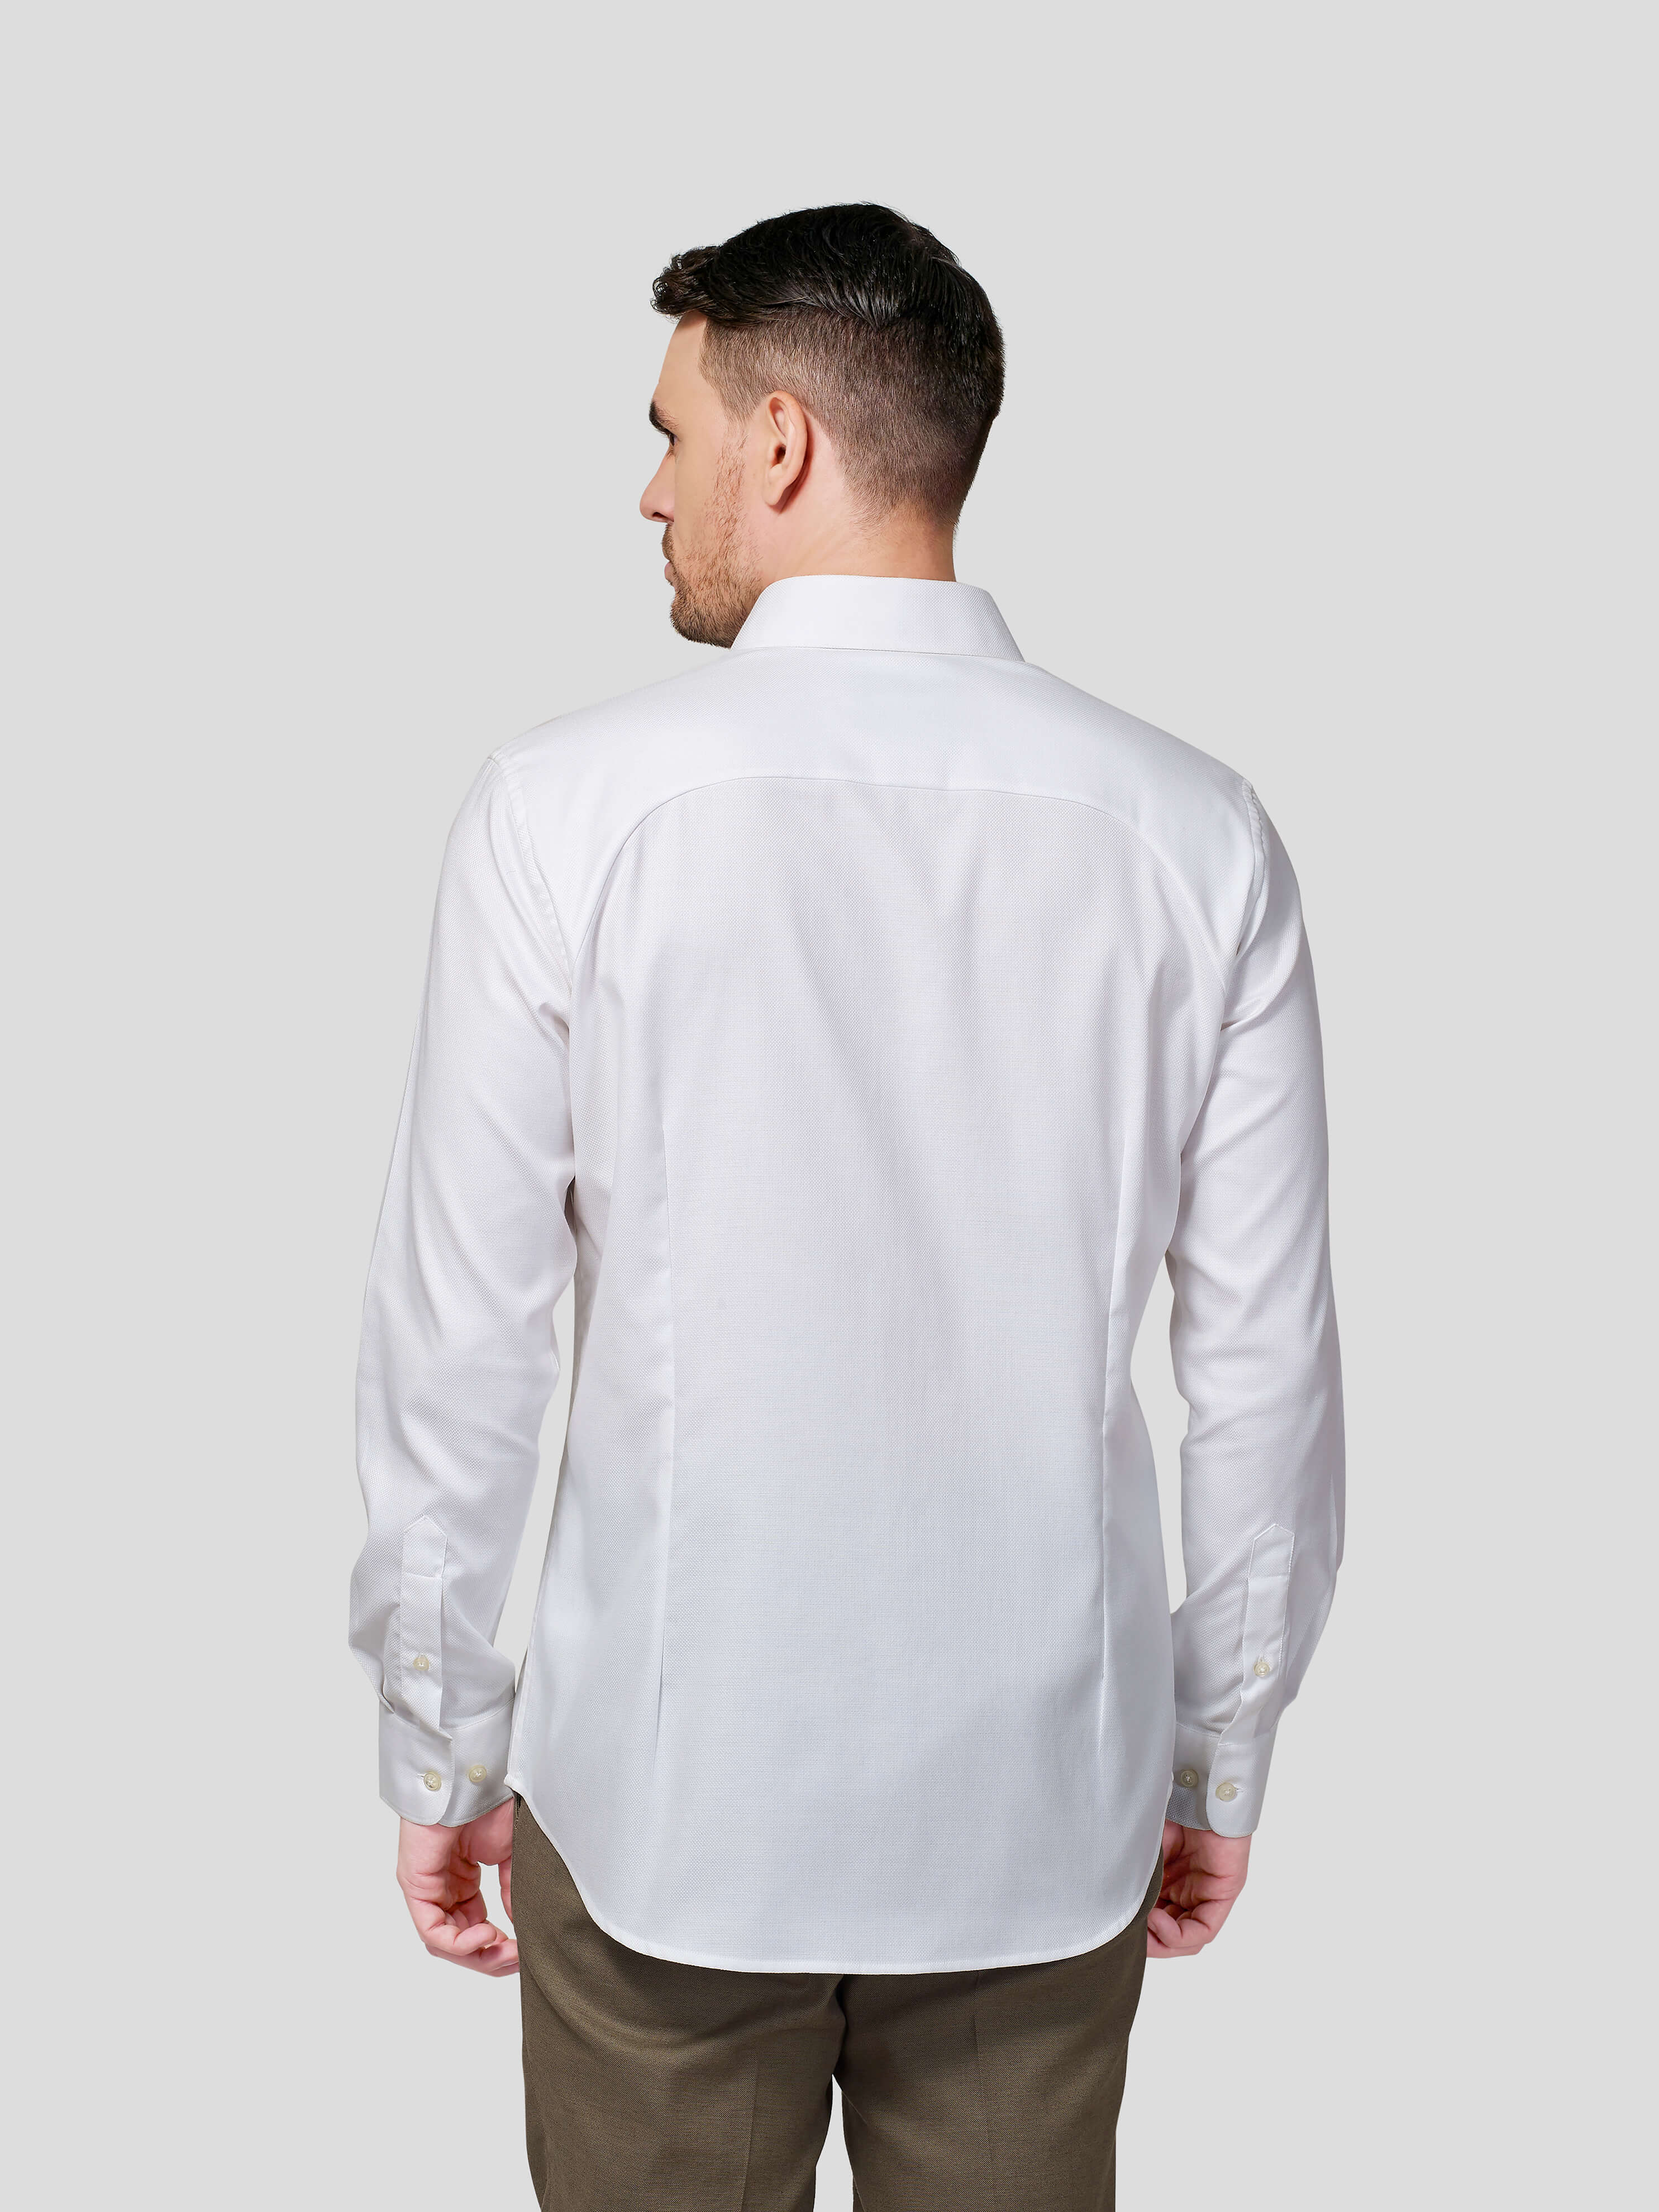 Raglan Shoulder Shirt - Zest Mélange 